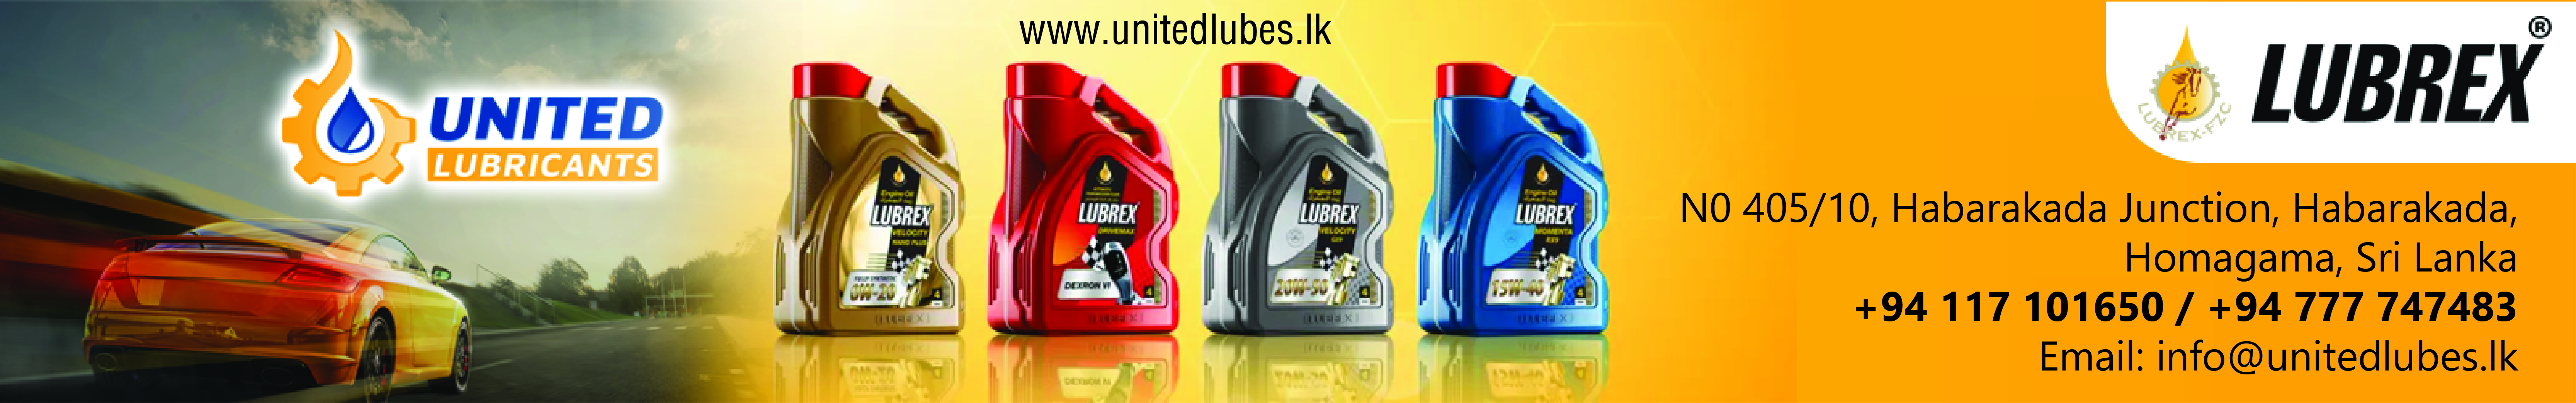 United Lubricants (Pvt) Ltd.jpg_Automobile.lk